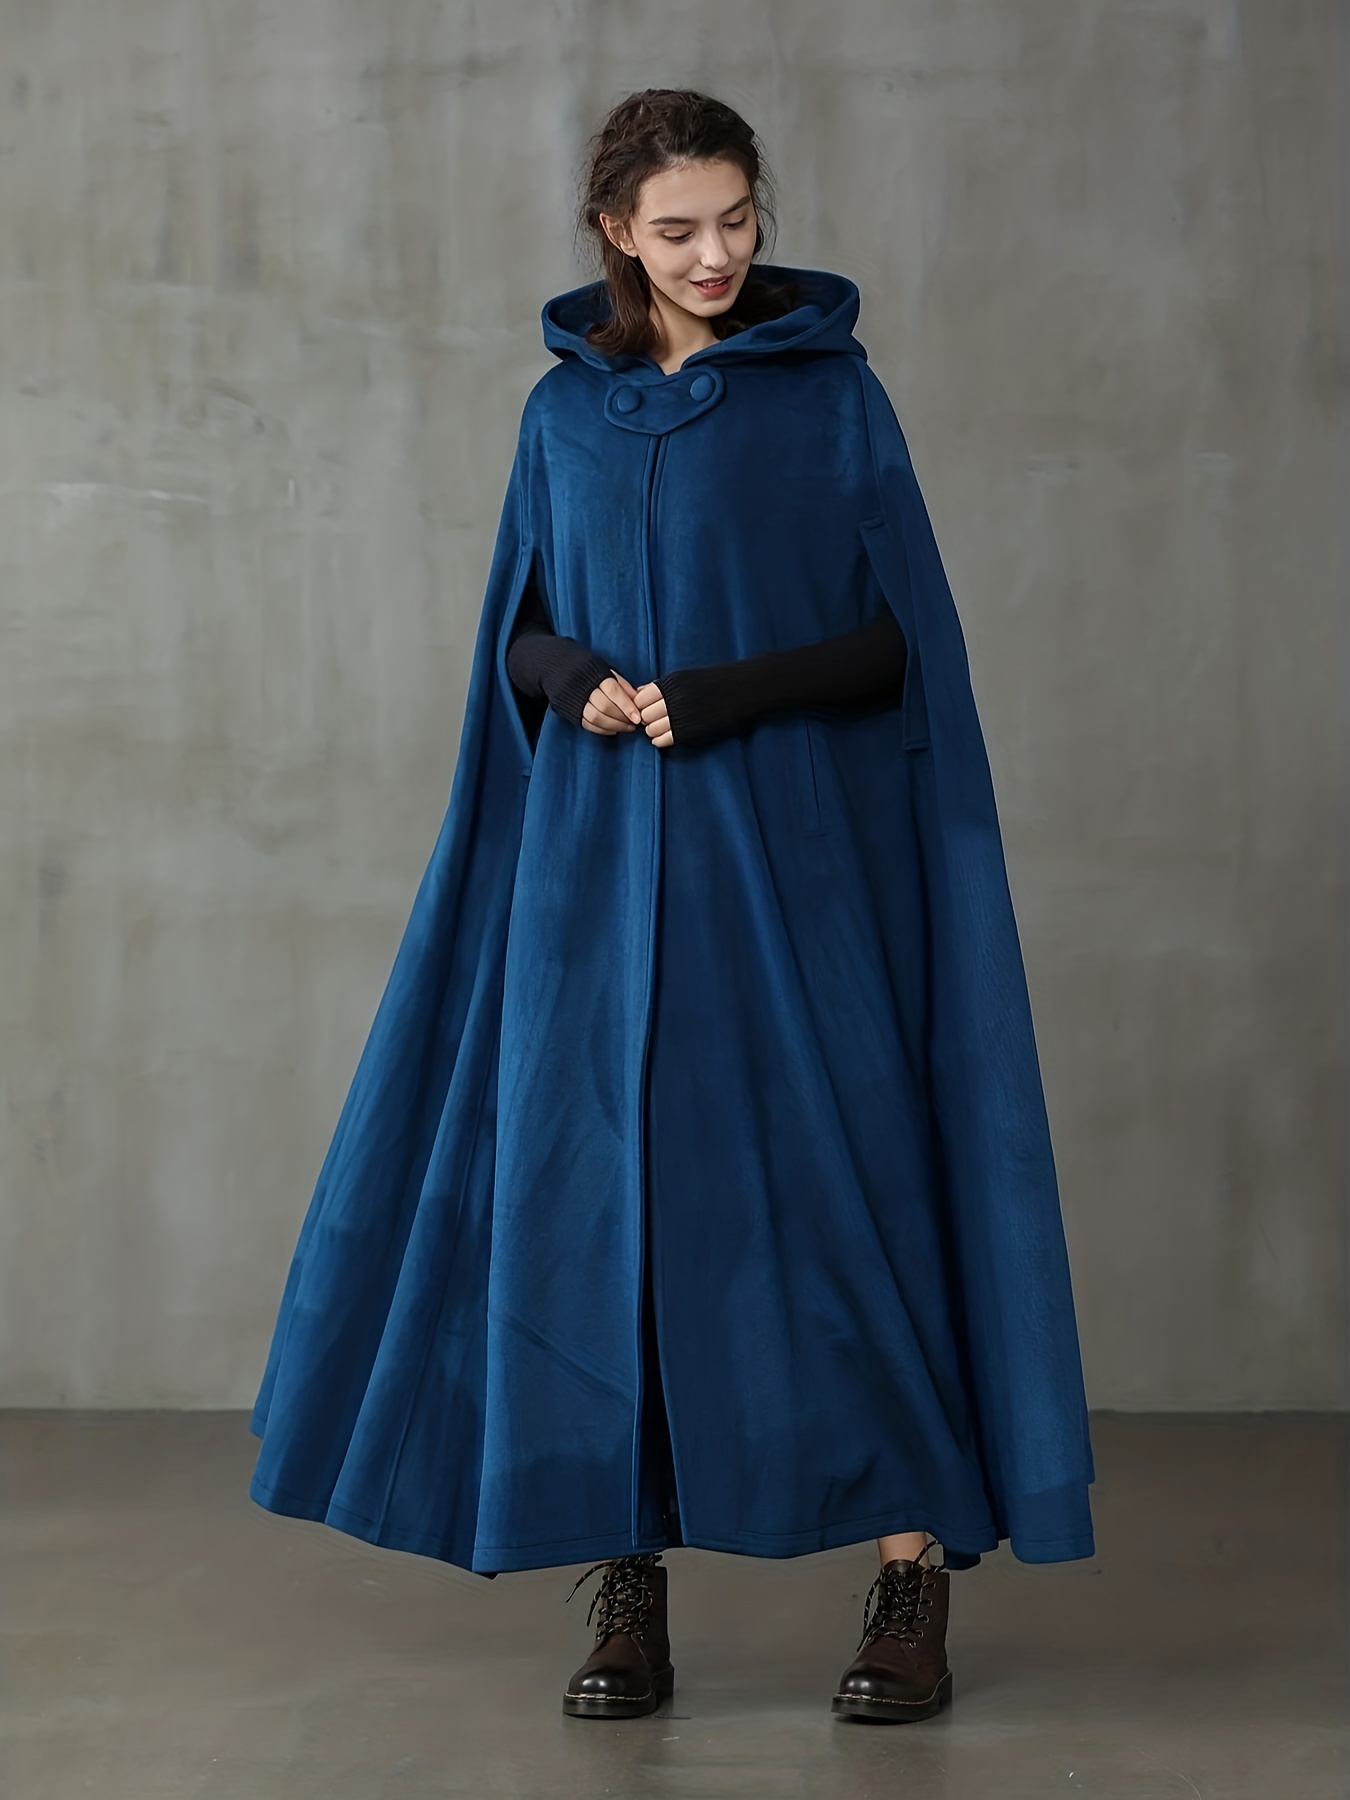 Solid Hooded Cape Coat  Cape coat, Hooded cape, Women cape coat